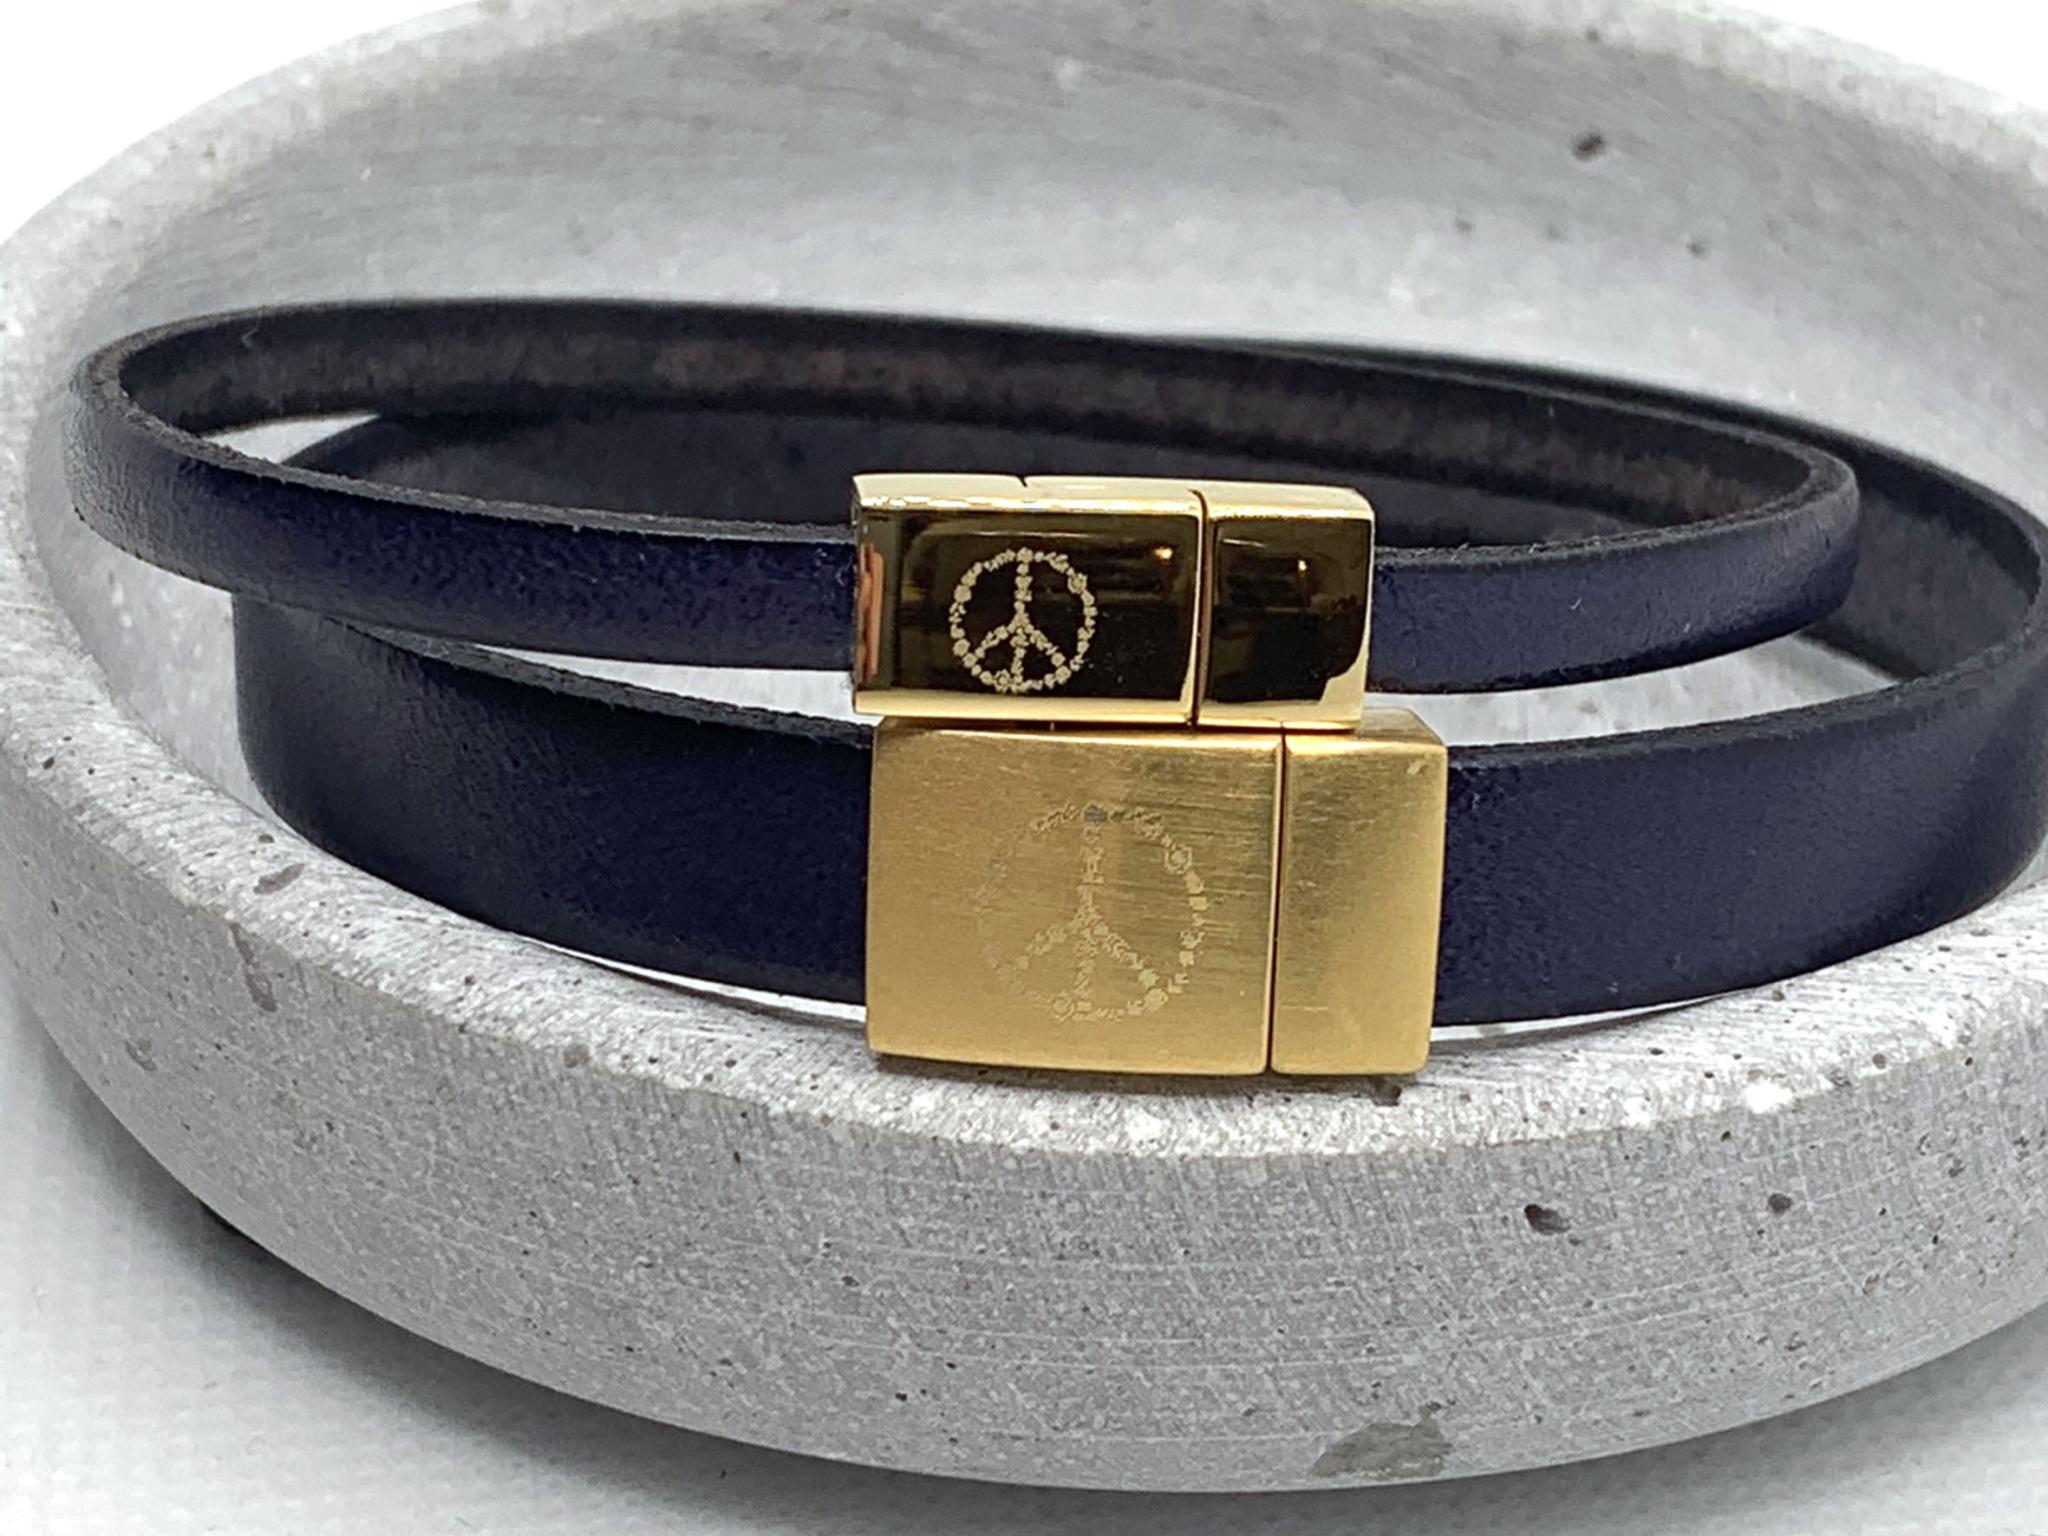 Partnerarmband aus Leder Blau mit goldenem Verschluss, Armbänder für Partner